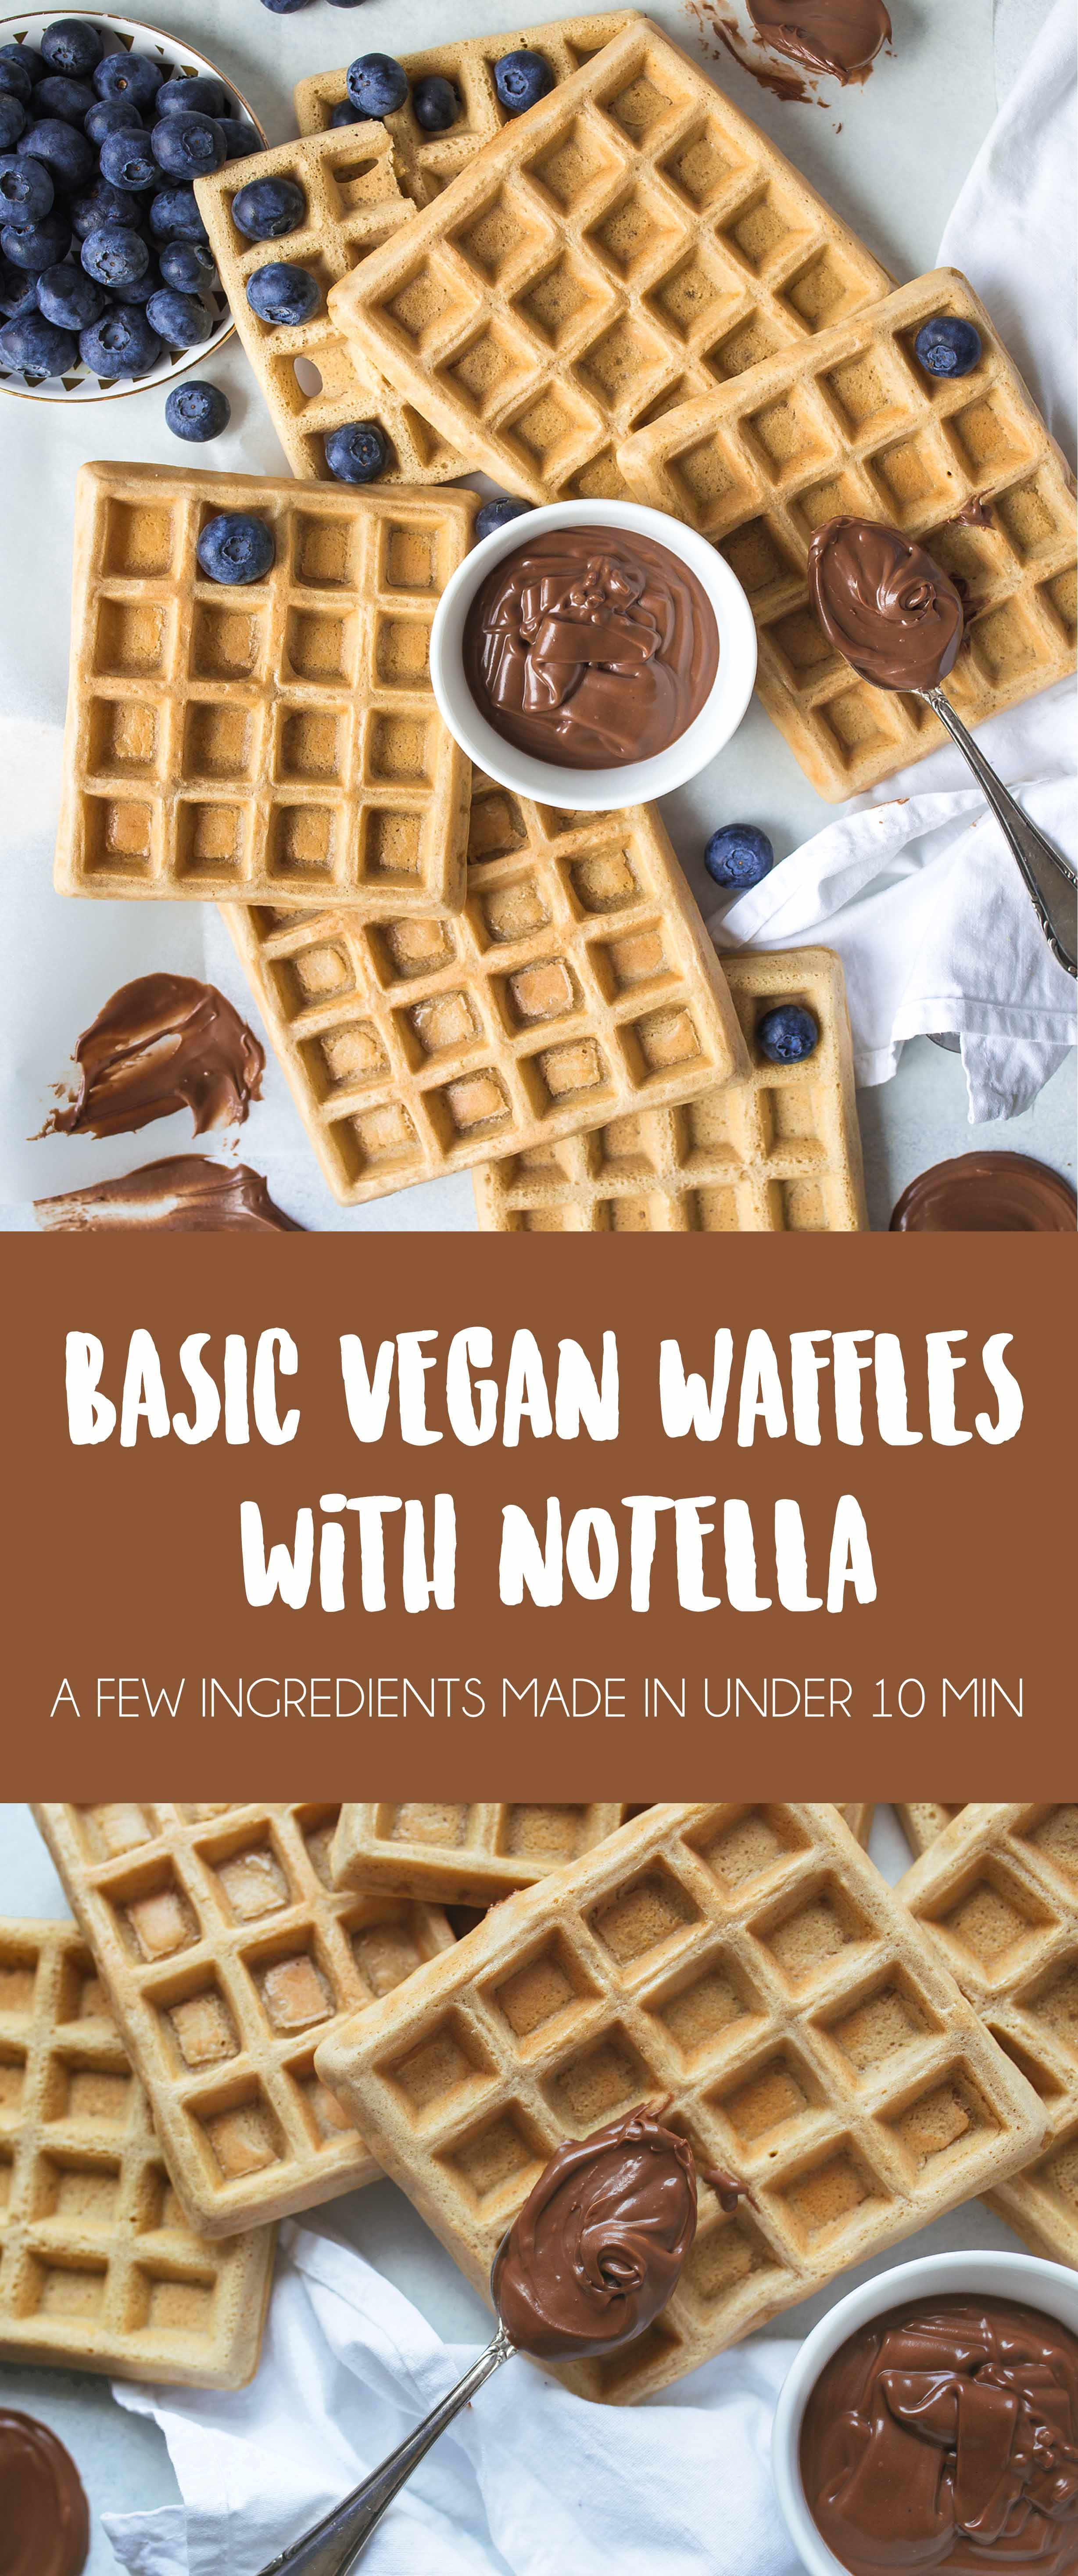 Basic Vegan Waffles for beginners